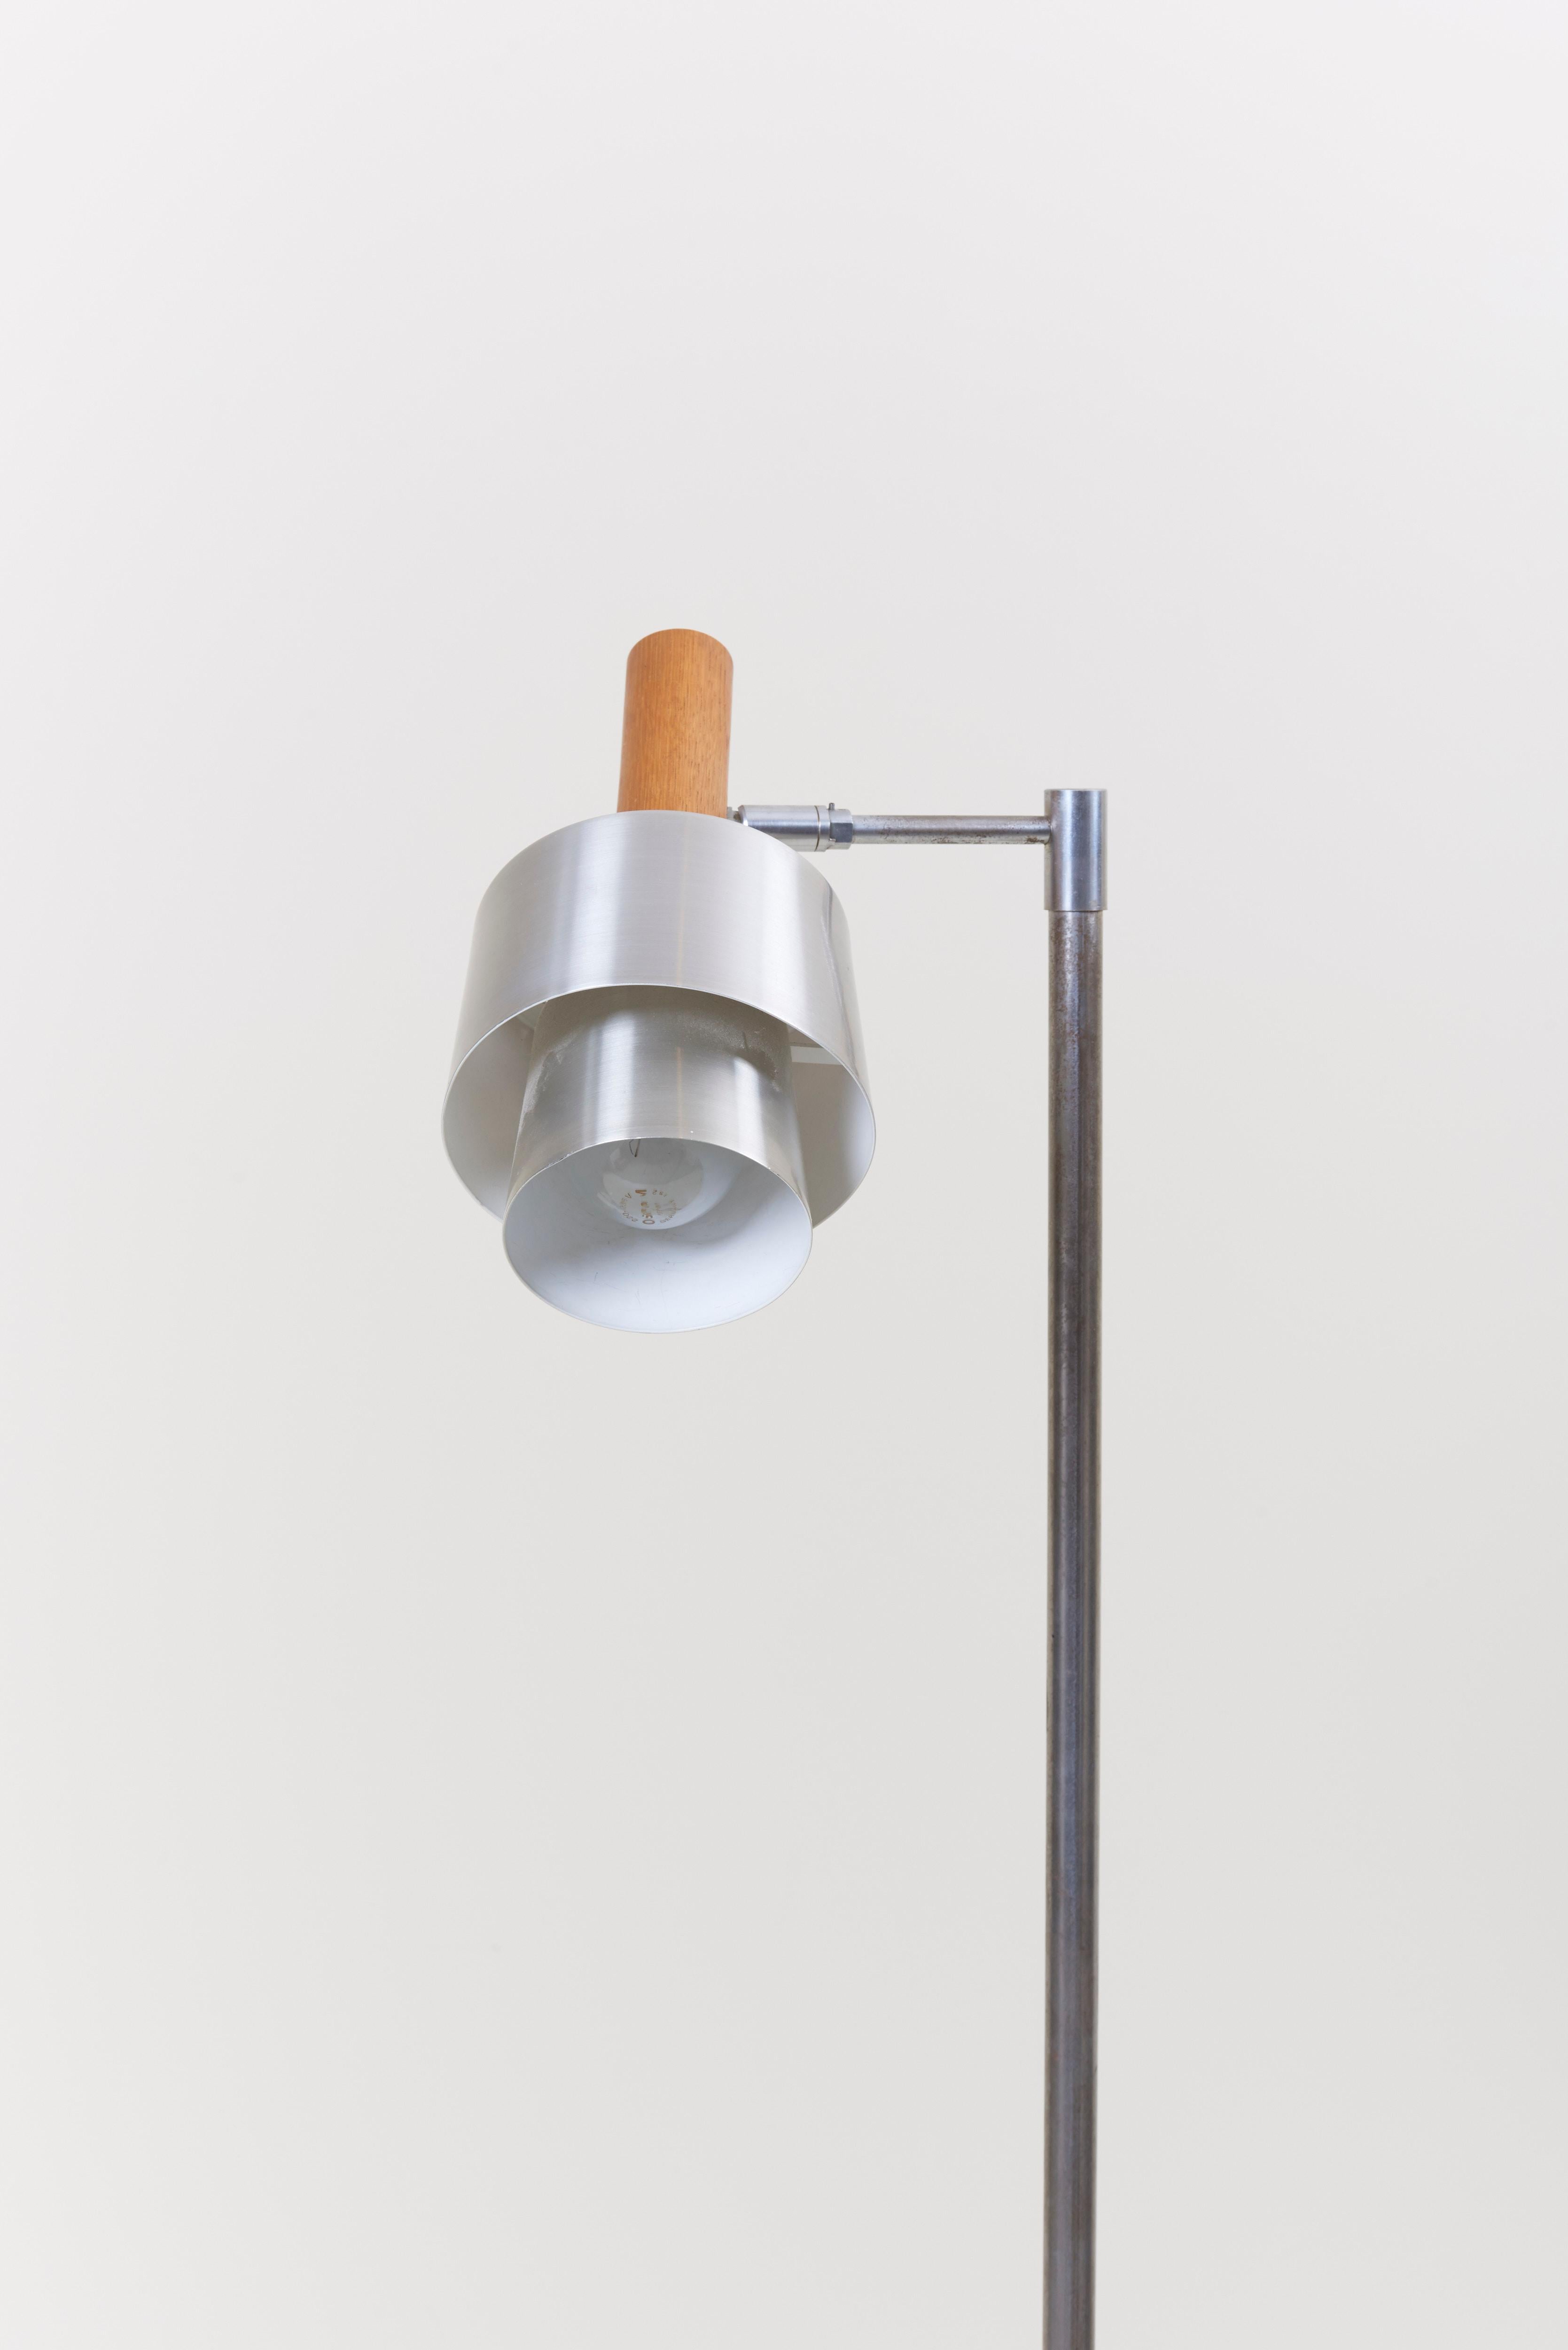 Steel Standard/ Reading Lamp by Jo Hammerborg for Fog & Mørup